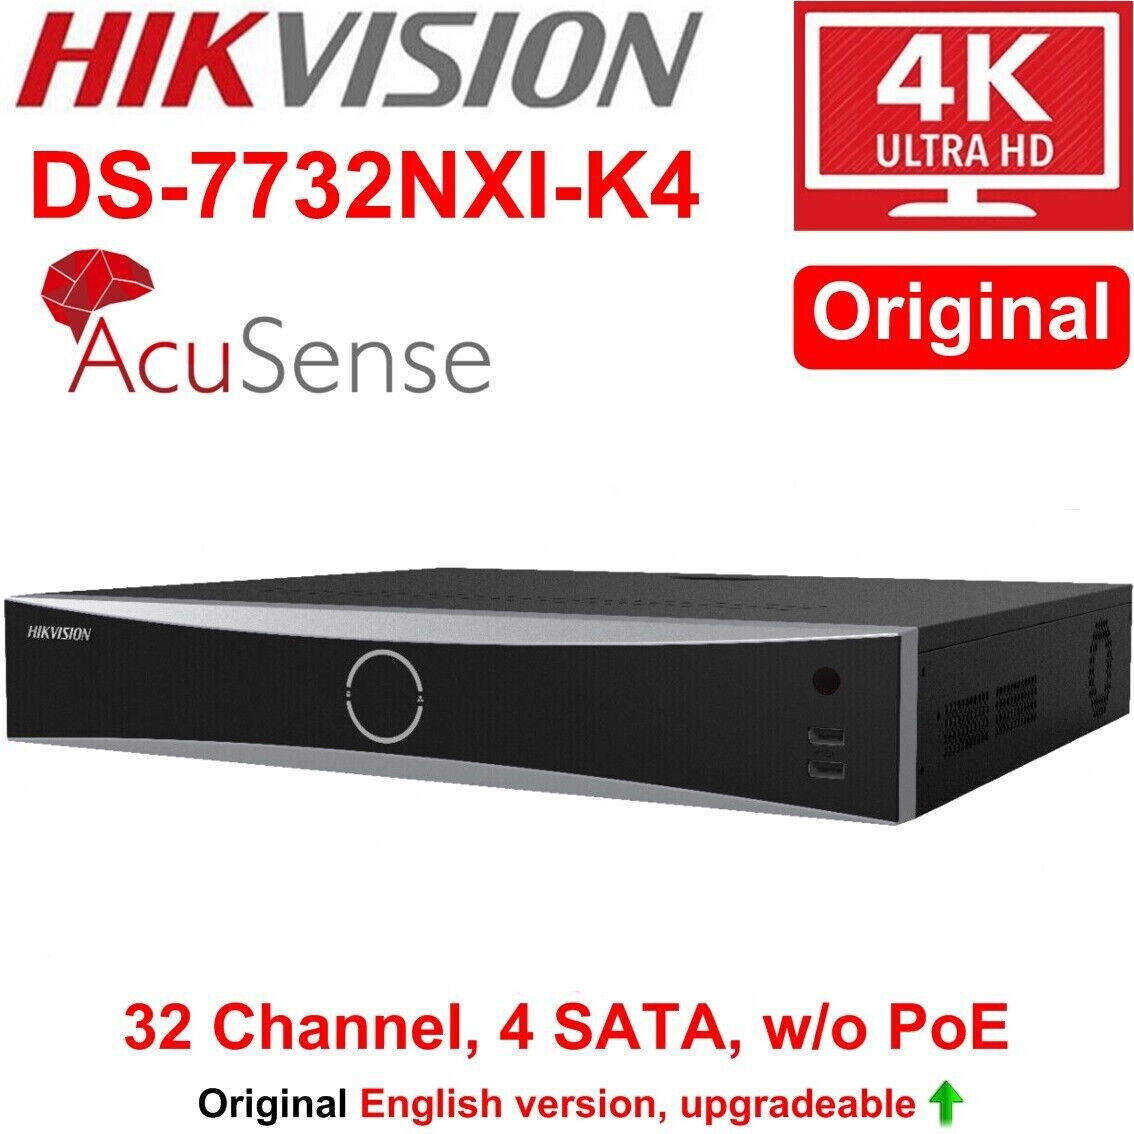 HIKVISION 32CH AcuSense NVR DS-7732NXI-K4 | Lazada PH